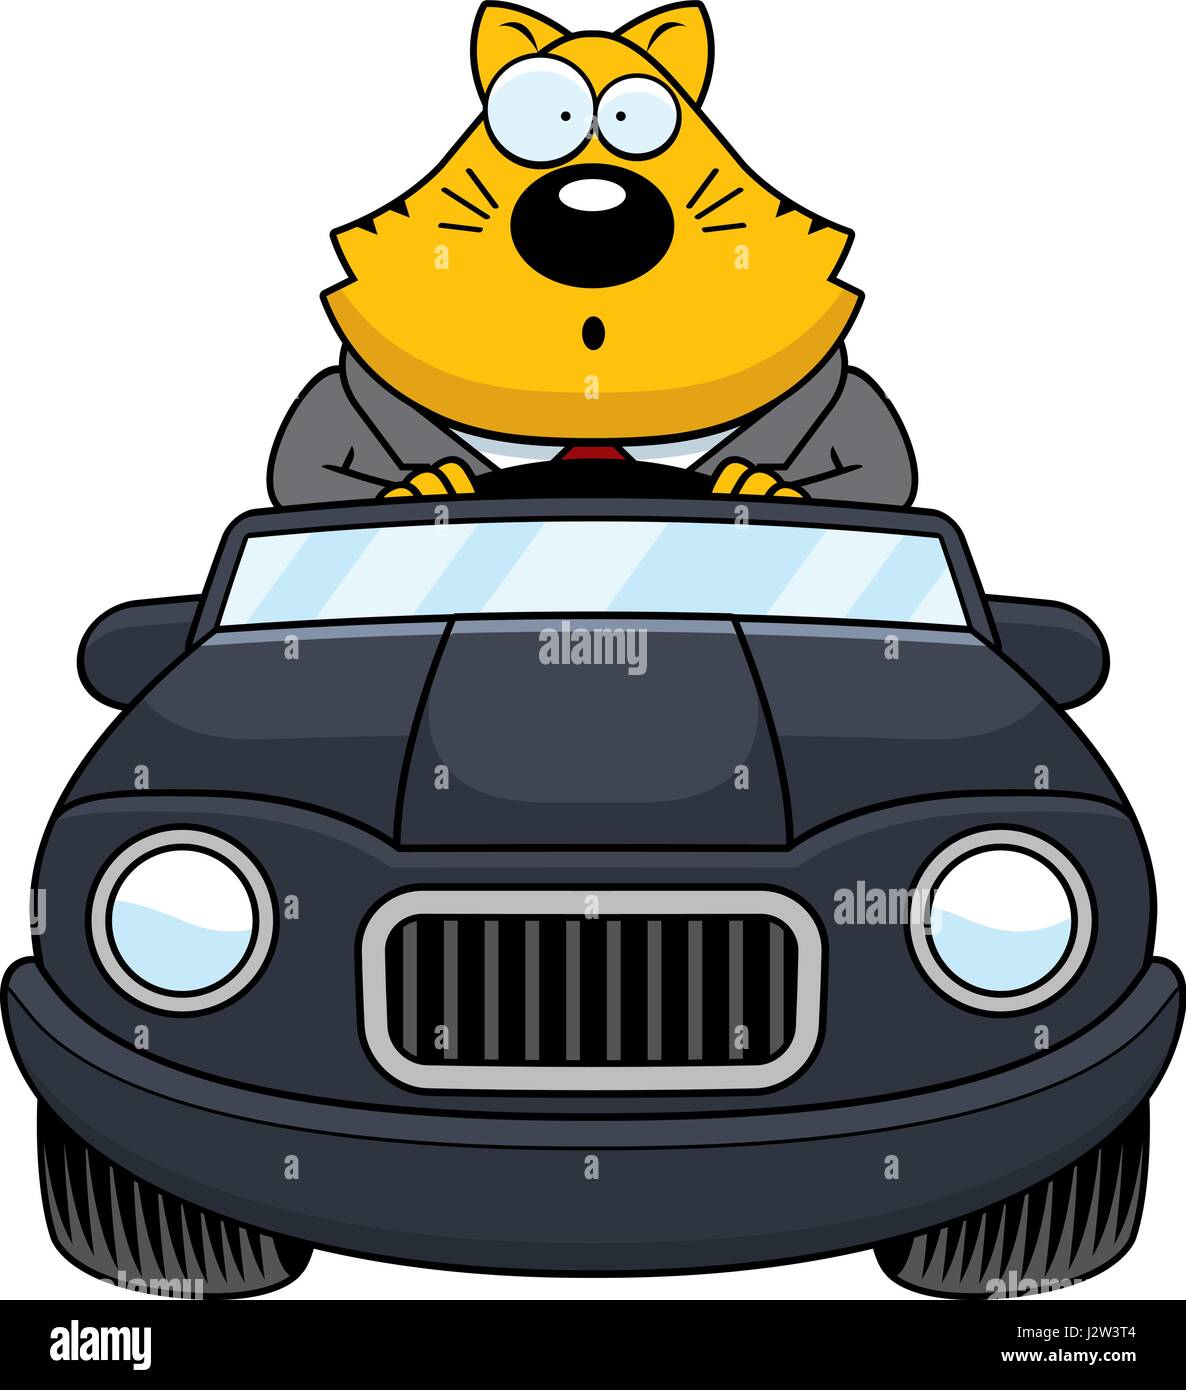 Un cartoon illustration d'un gros chat à la conduite d'une voiture et à la surprise. Illustration de Vecteur